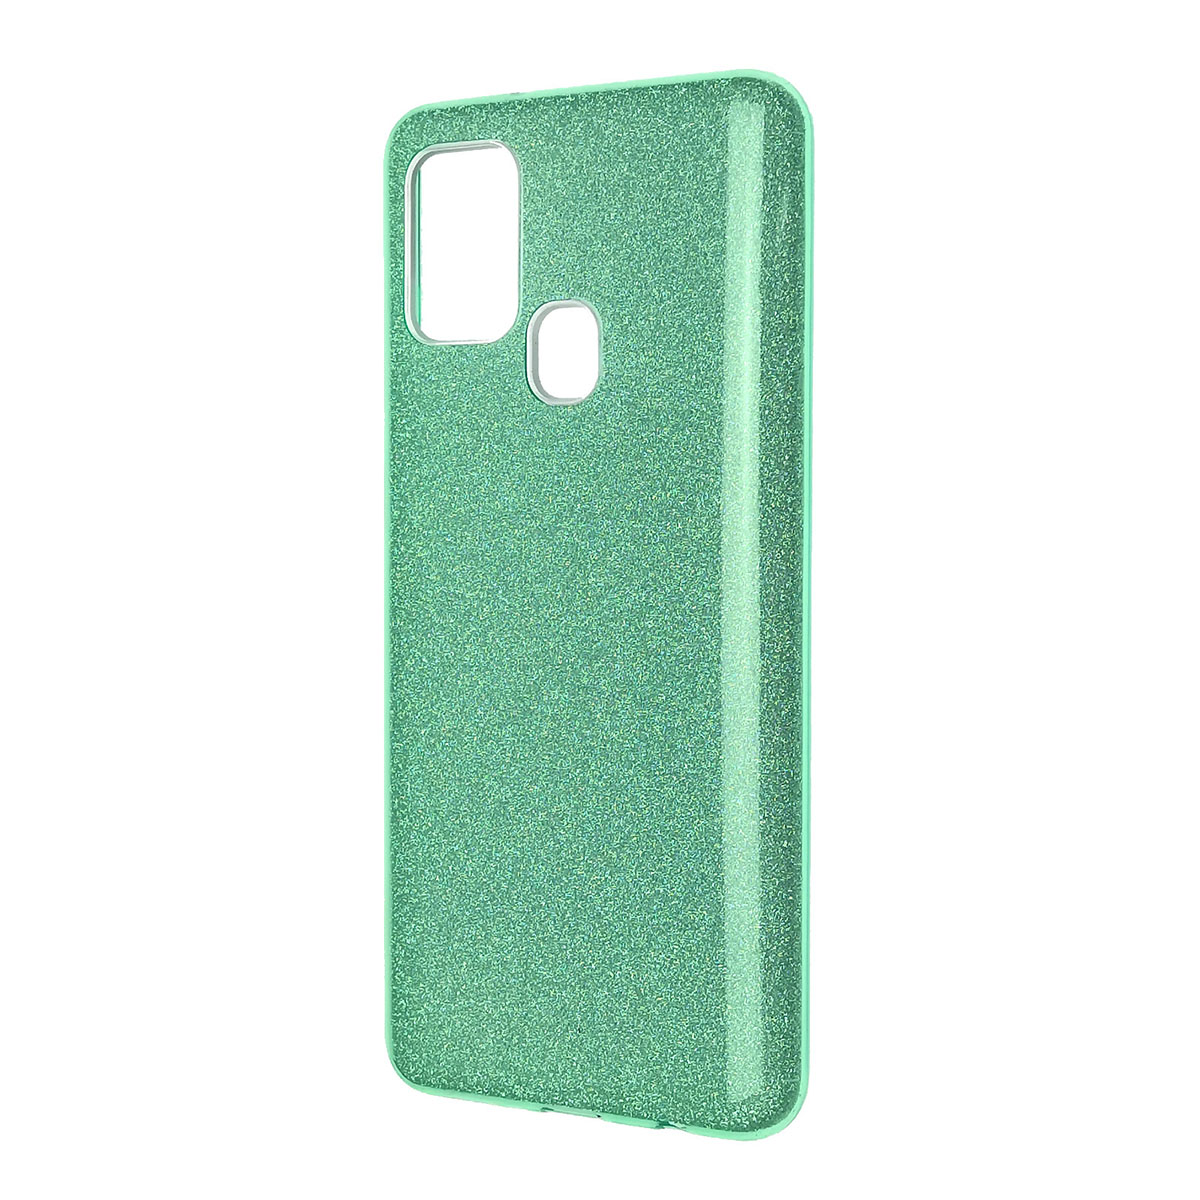 Чехол накладка Shine для SAMSUNG Galaxy A21S (SM-A217), силикон, блестки, цвет зеленый.